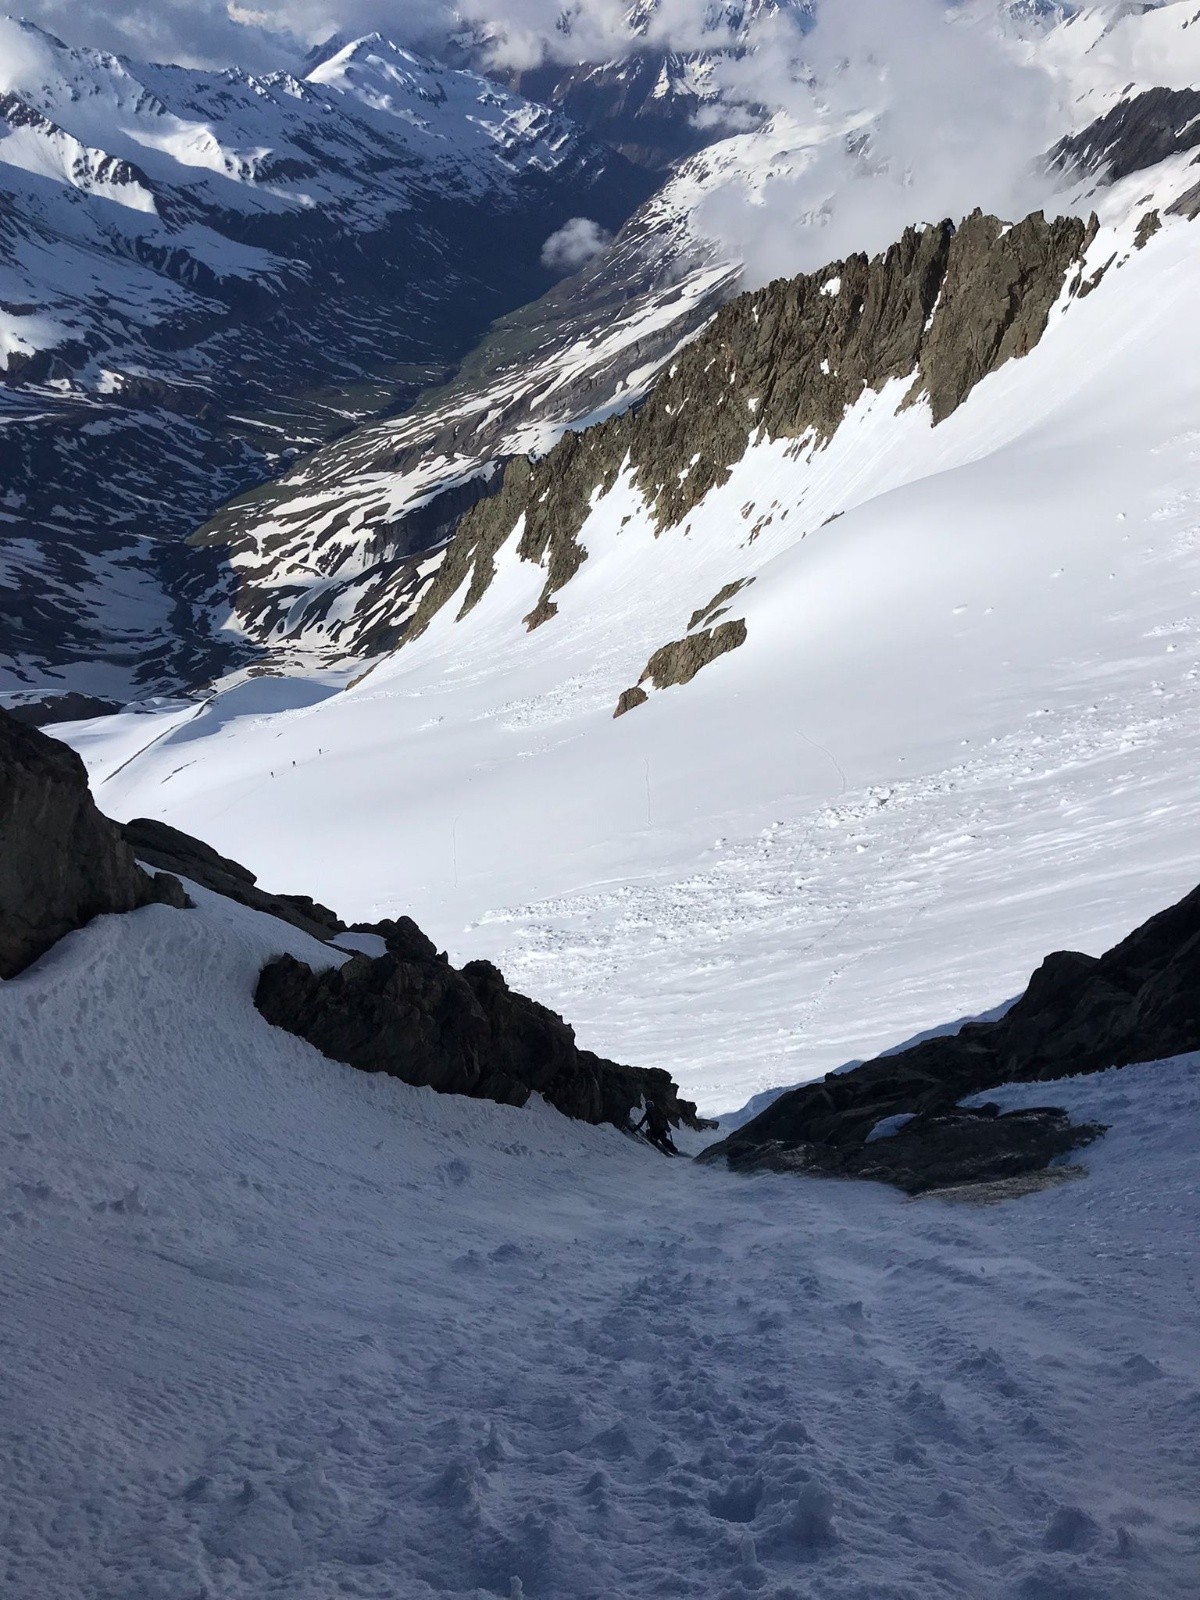  Descente du col des glaciers : neige dure et entonnoir juste assez large pour les skis 